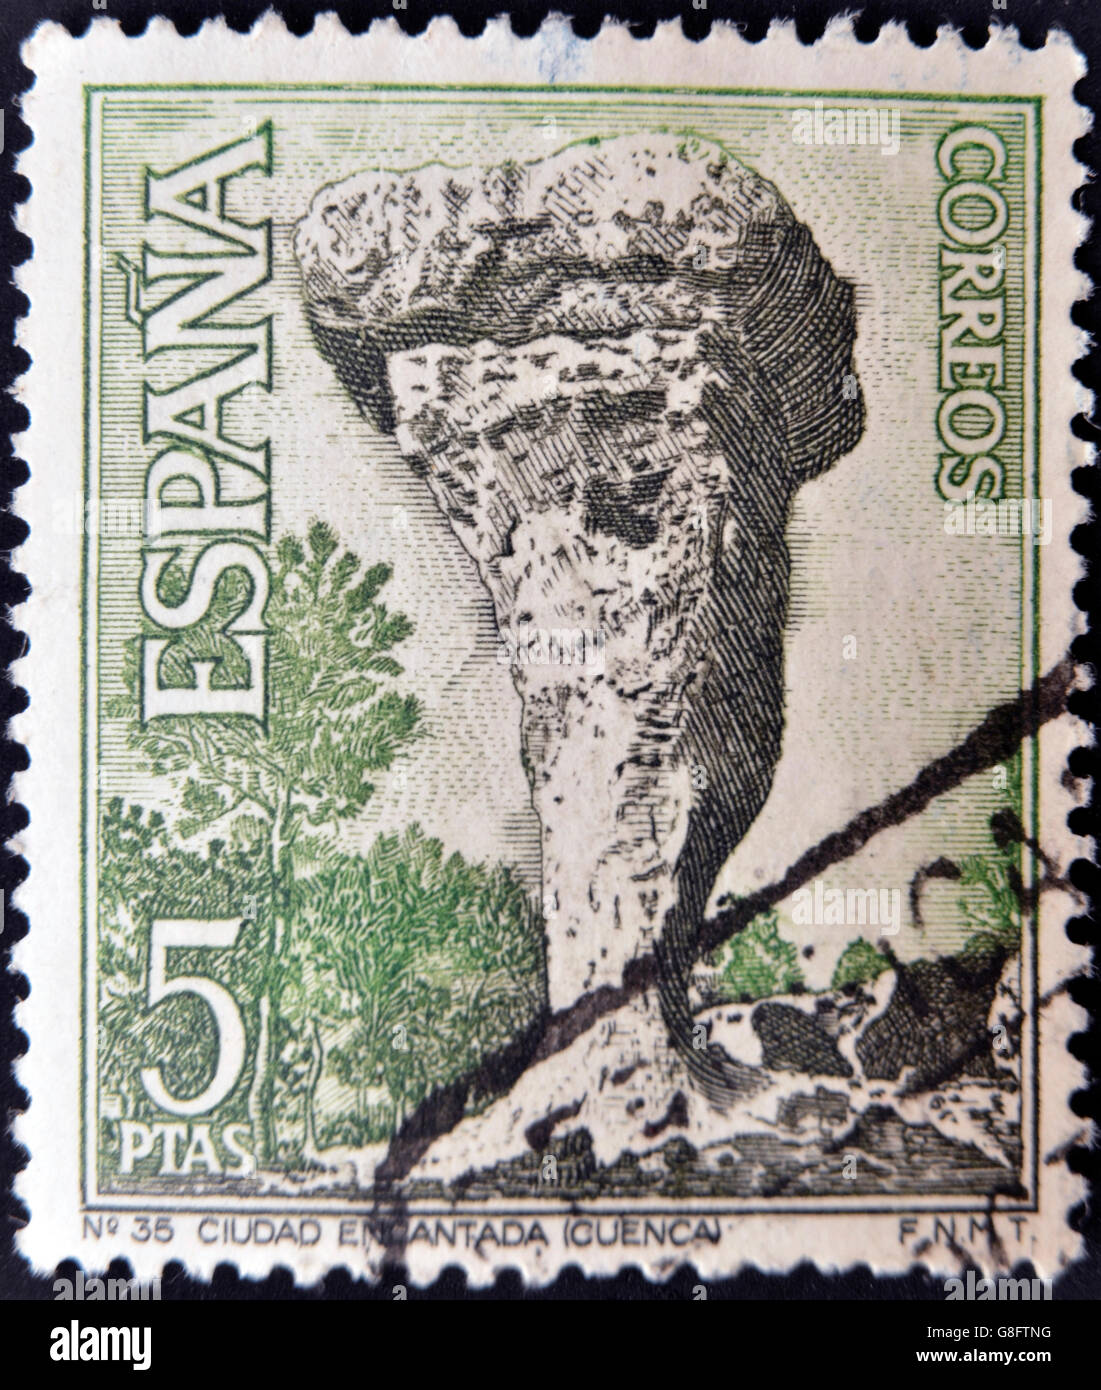 SPAIN - CIRCA 1967: A stamp printed in Spain shows La Ciudad Encantada, Cuenca, circa 1967 Stock Photo